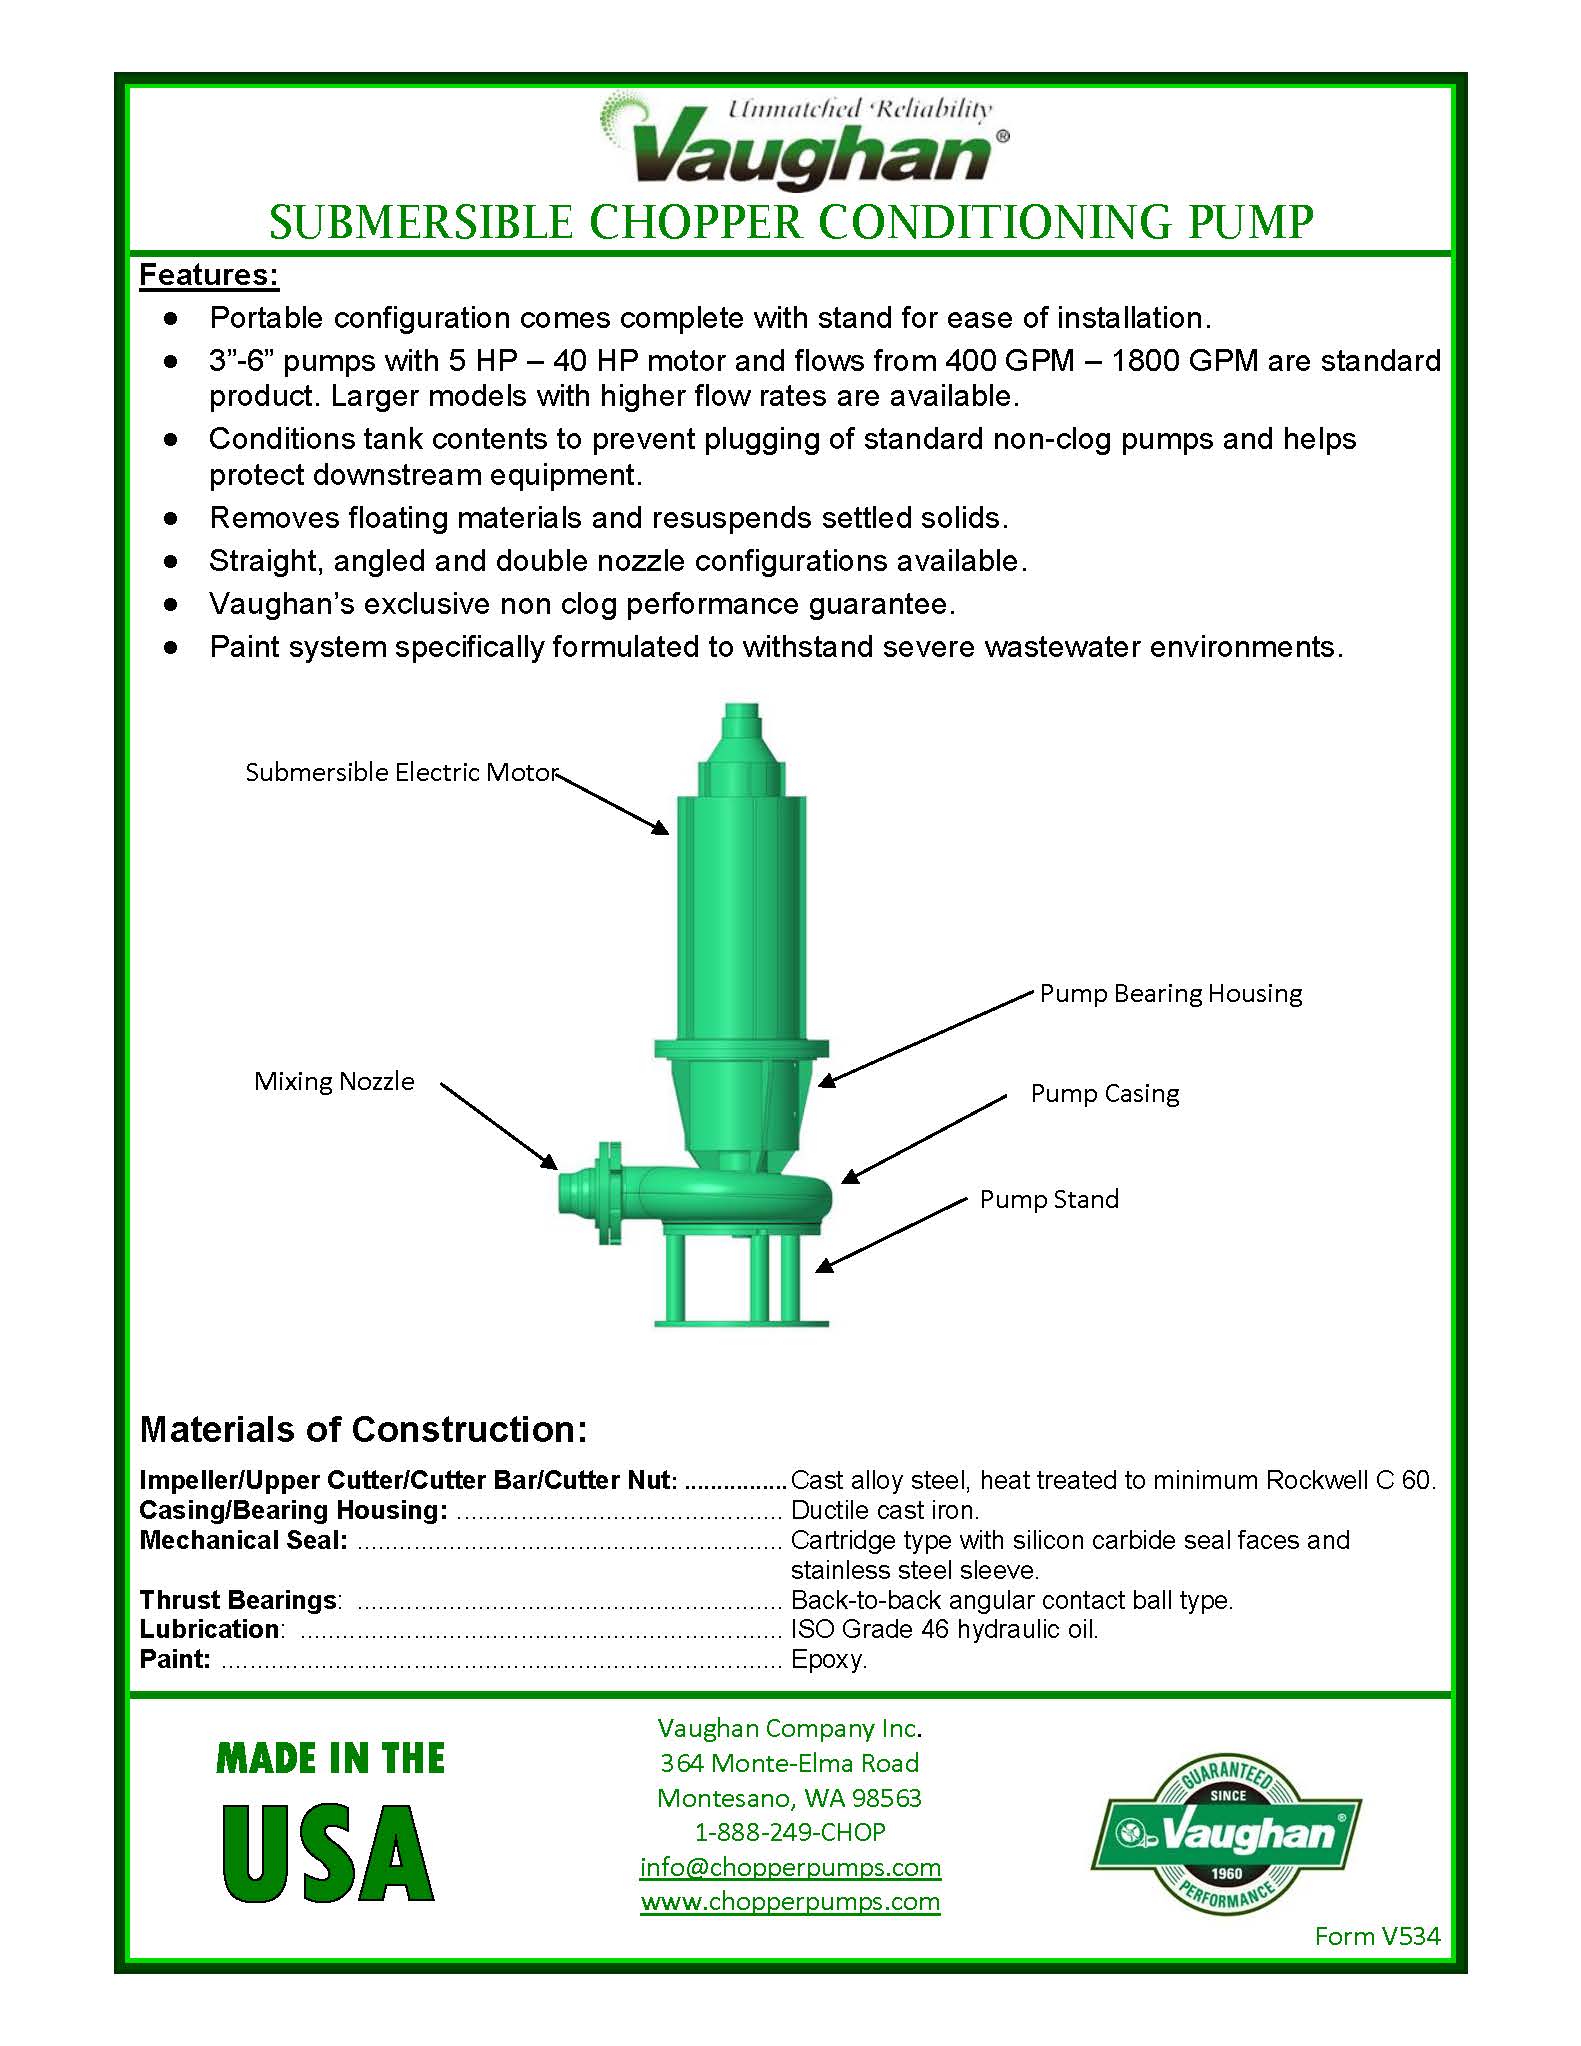 Vaughan Conditioning Pump Info Sheet